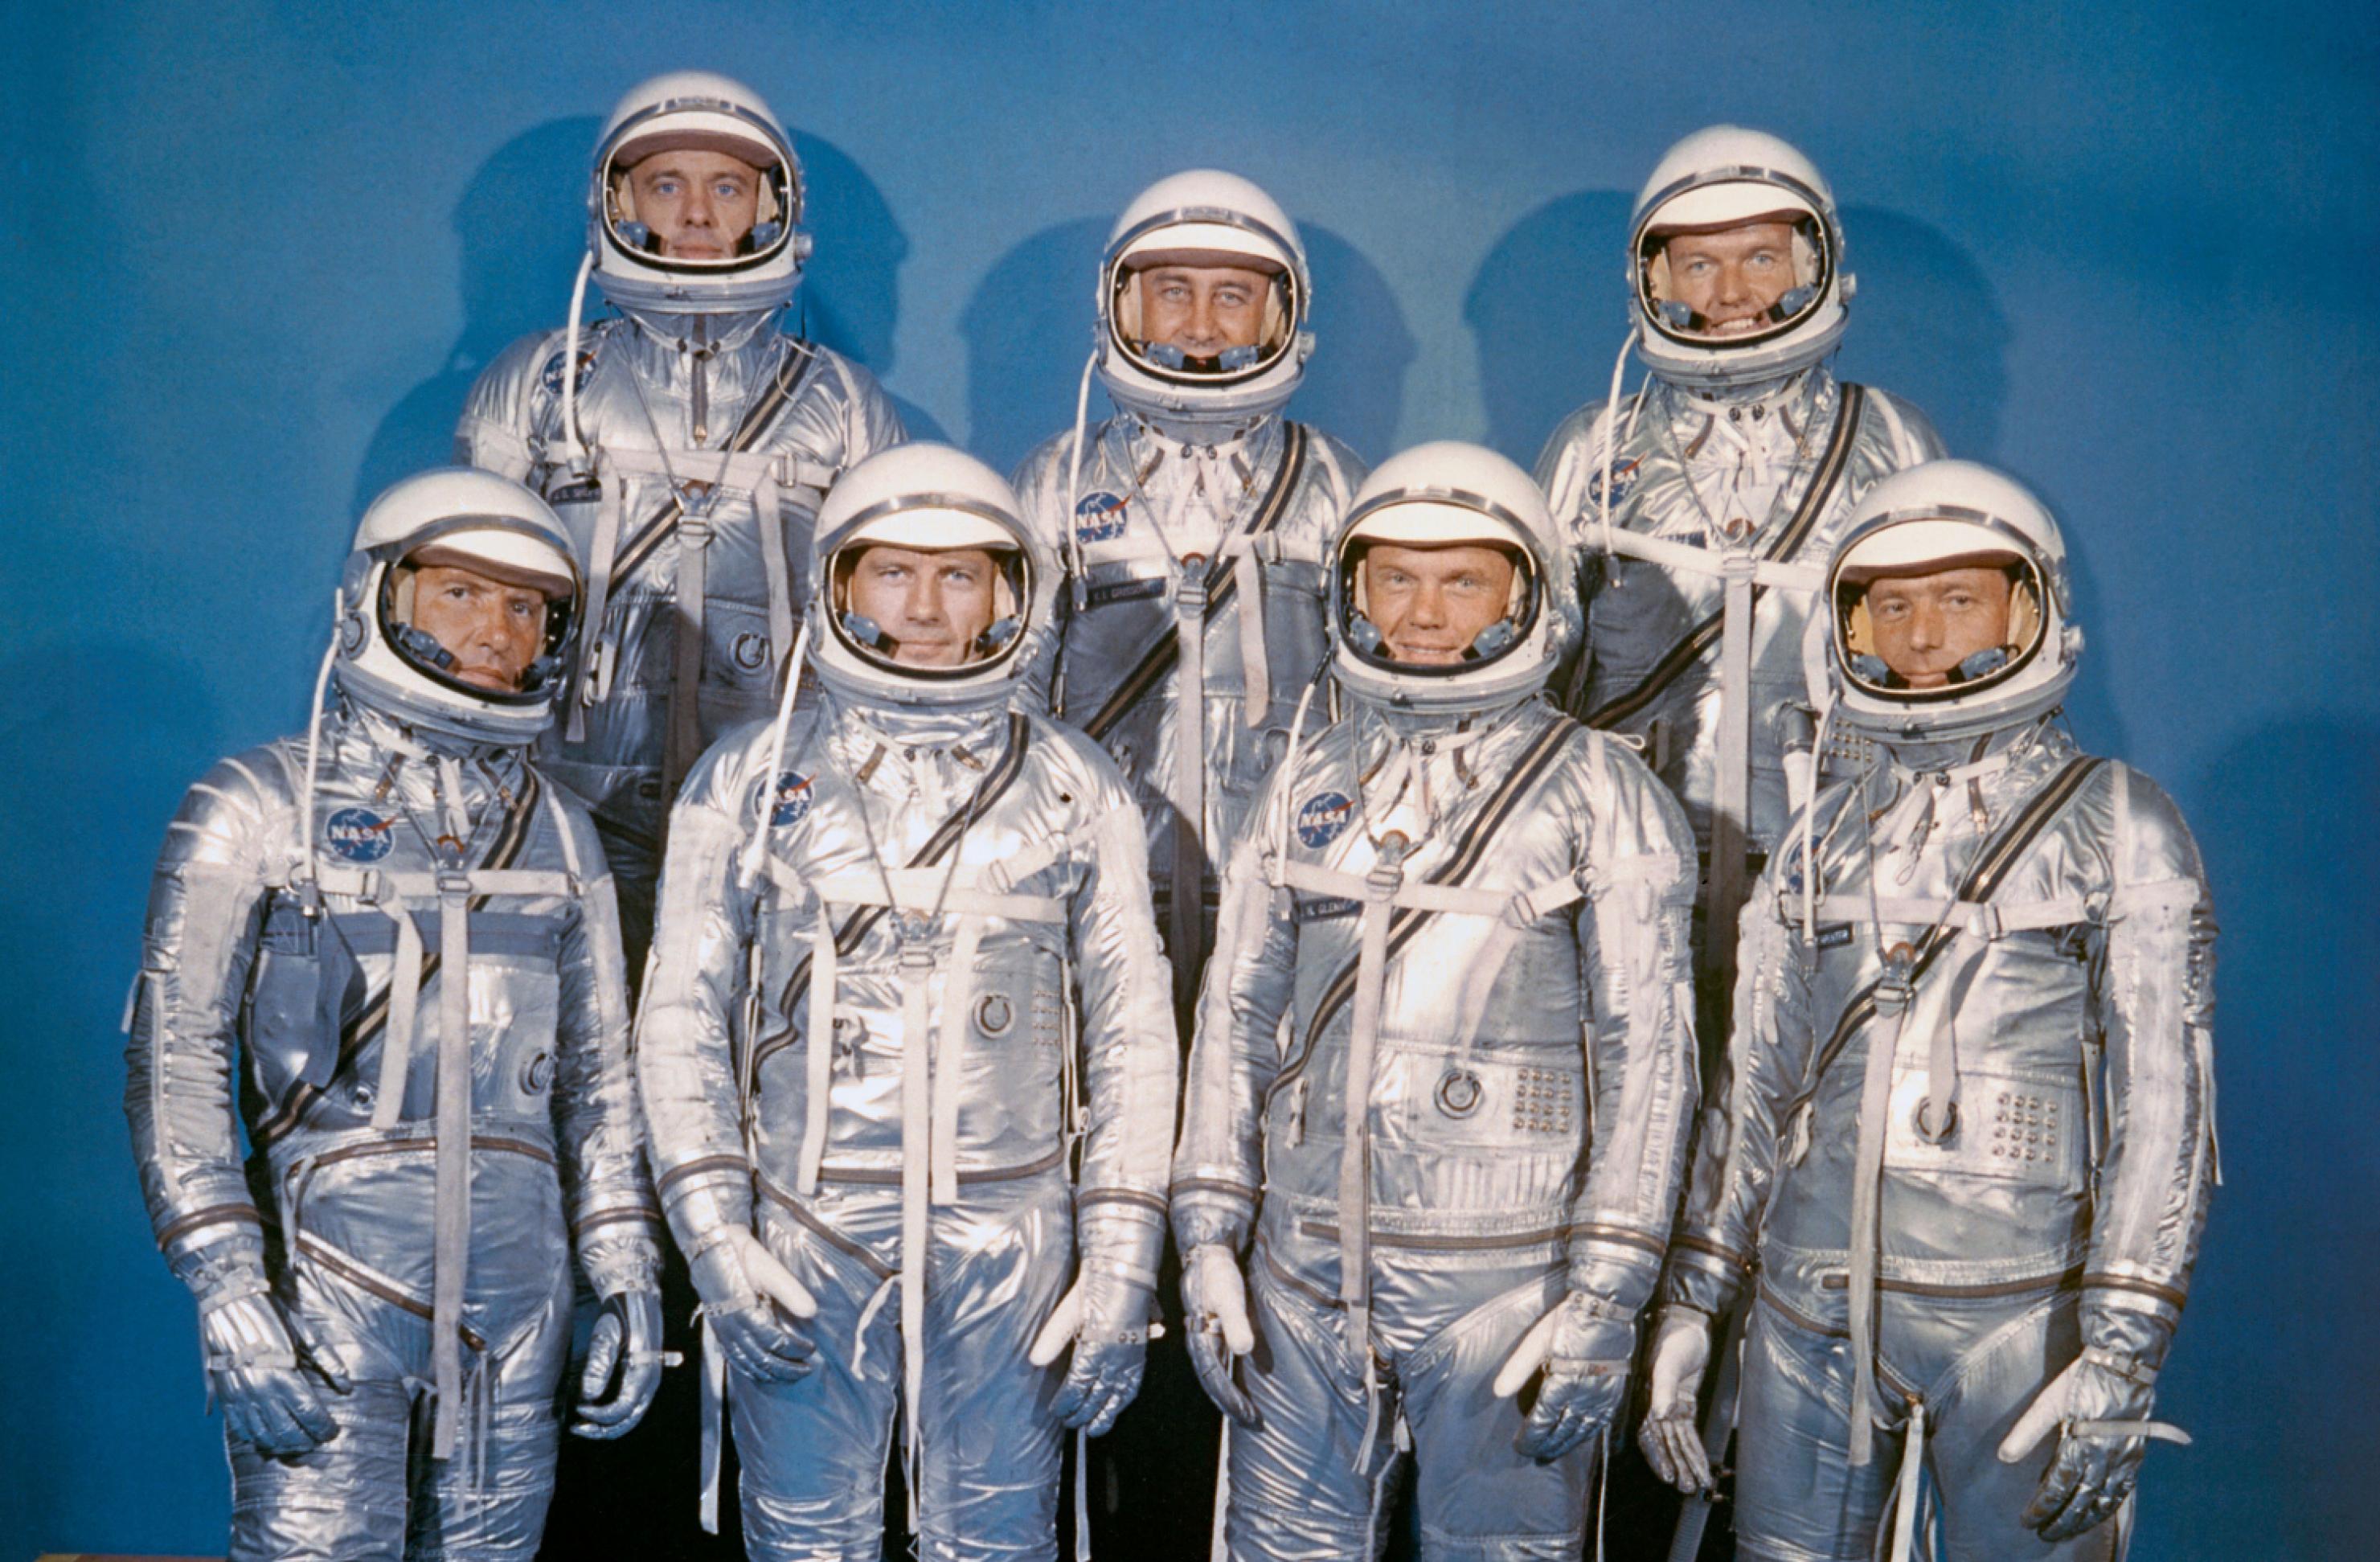 Die Mercury 7, sieben Astronauten in silbrigen Anzügen posieren vor blauer Leinwand: Walter Schirra, Donald „Deke“ Slayton, John H. Glenn, Scott Carpenter; hintere Reihe: Alan B. Shepard, Virgil I. „Gus“ Grissom und Gordon Cooper